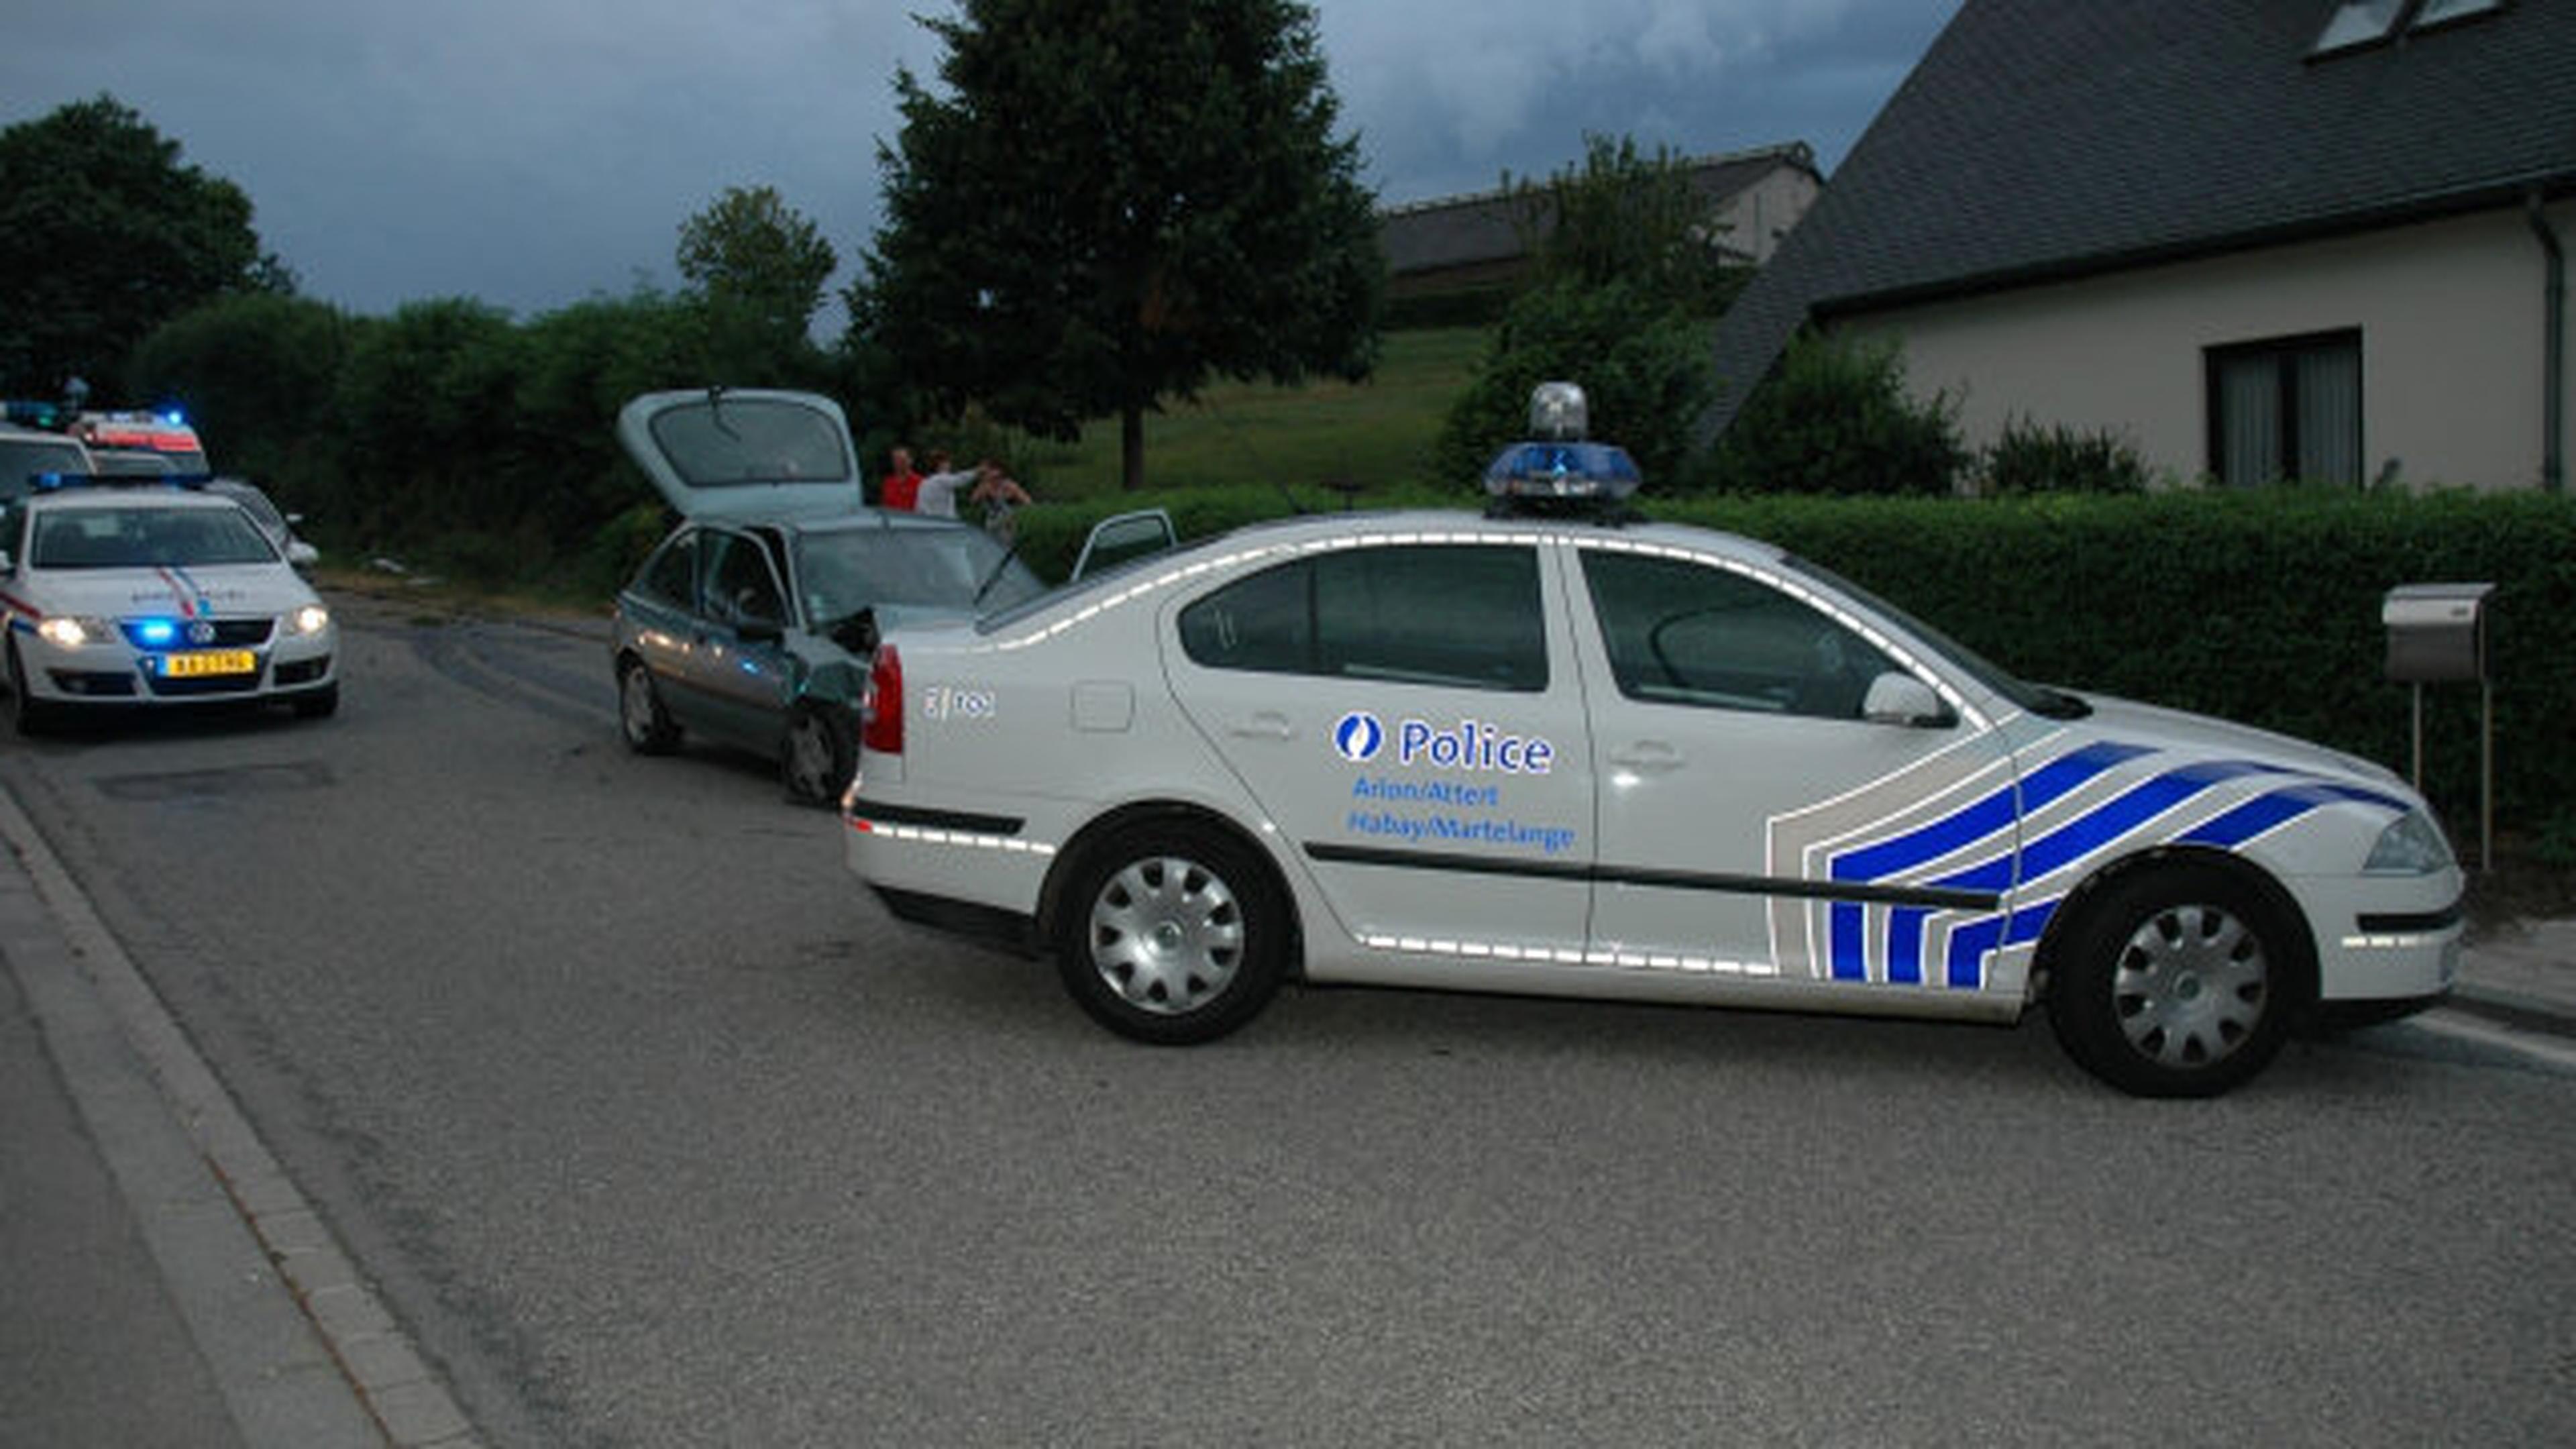 57-Jähriger hatte in Ischgl Laserblocker und Radarwarner in Auto